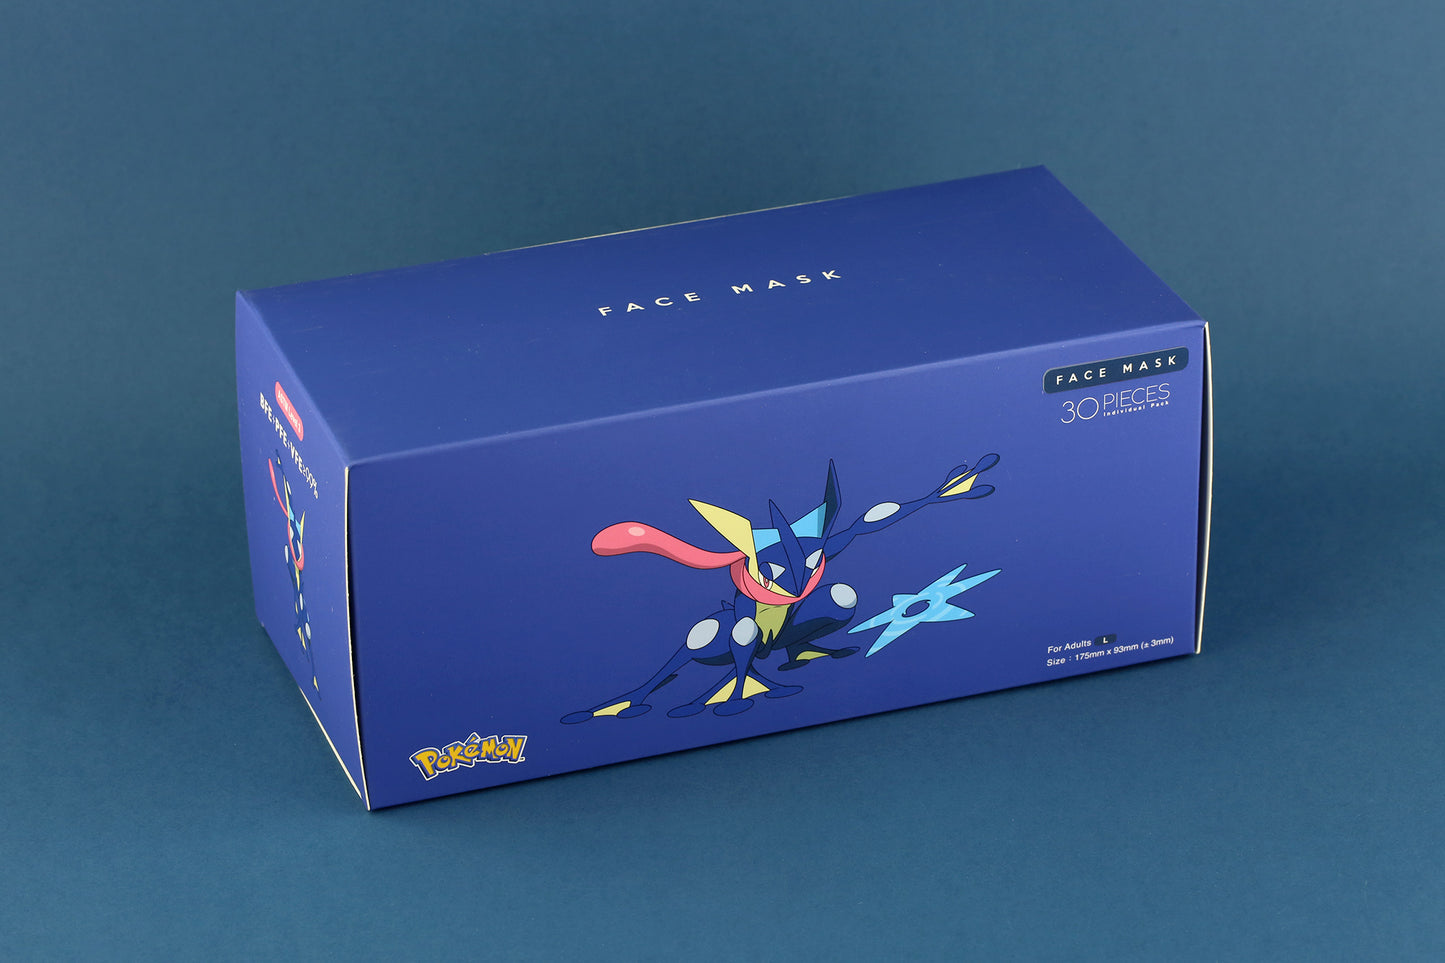 【現貨】Greninja Color Pokemon Official Limited Edition EN14683 TypeIIR VFE99 Medox 30pcs/box【Made in Hong Kong】